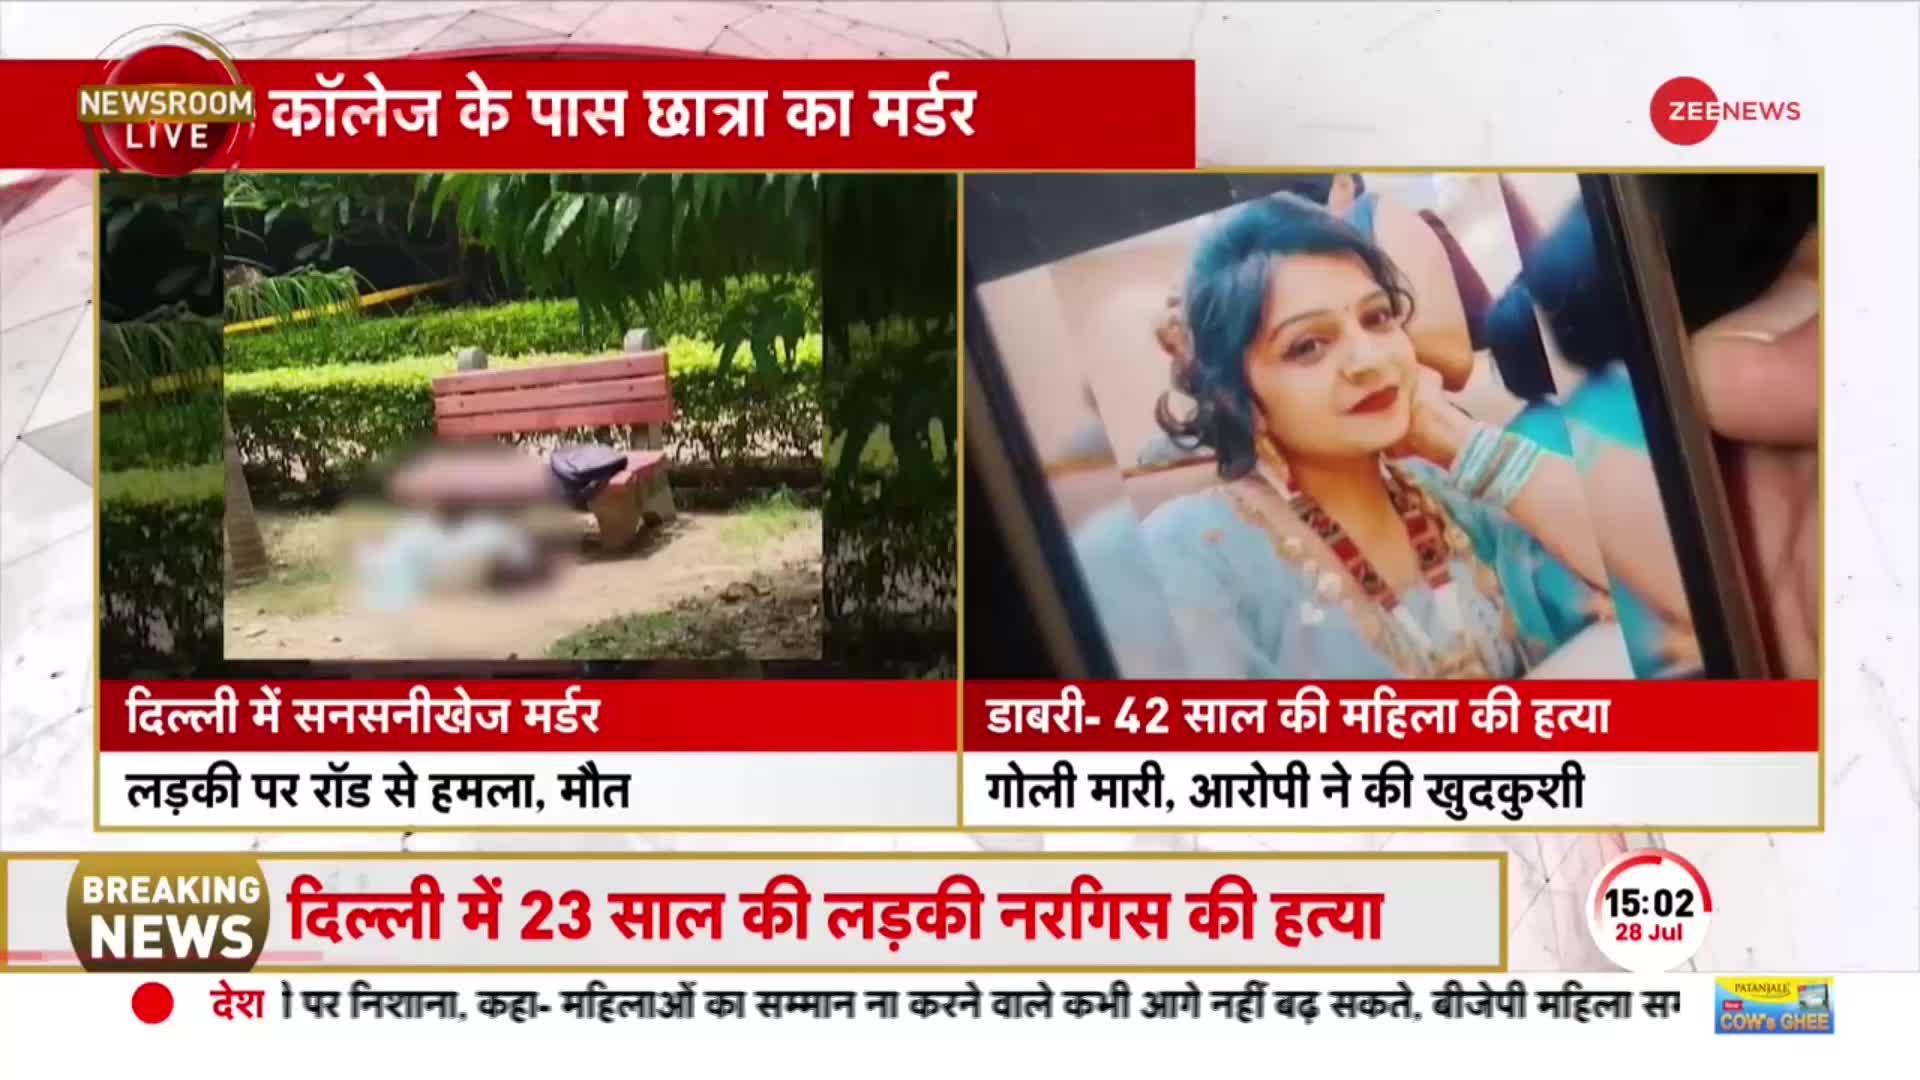 Delhi Murders Update: 24 घंटे में 2 महिलाओं की हत्या से सनसनी, शादी से इनकार पर रॉड से किया वार